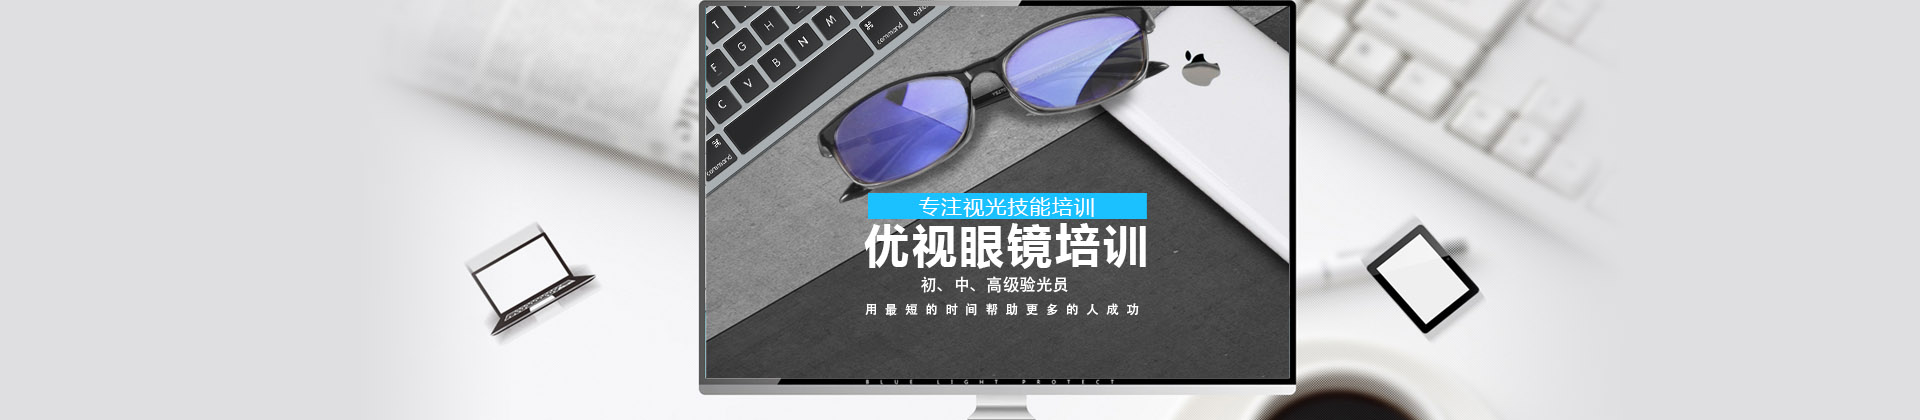 上海立可明眼镜培训学校